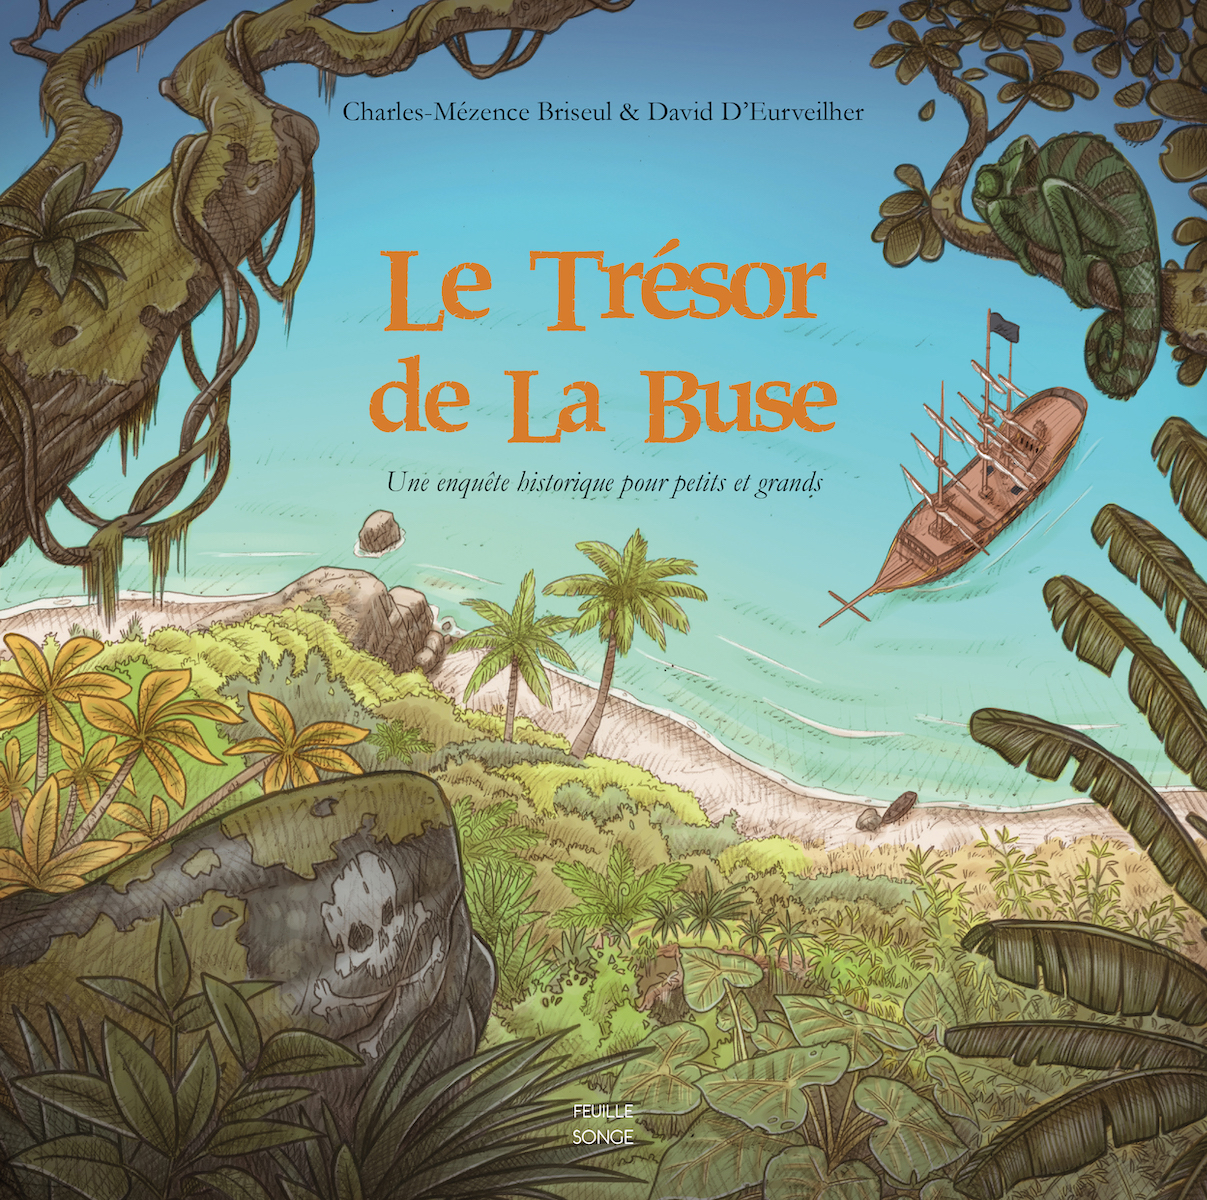 Le trésor de La Buse - Une enquête historique pour petits et grands